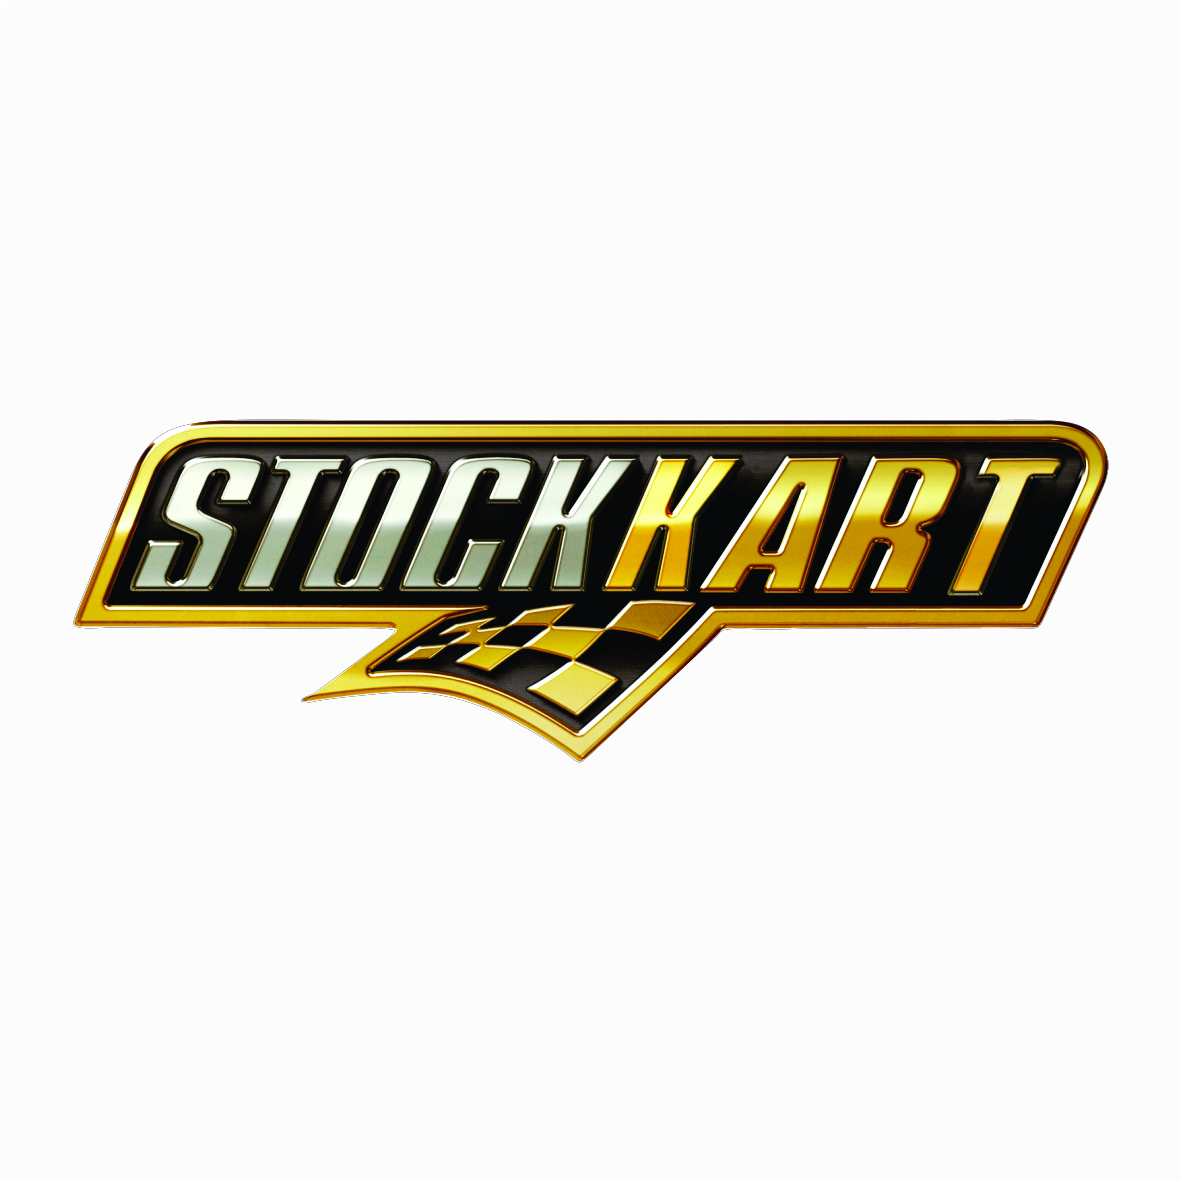 StockKart